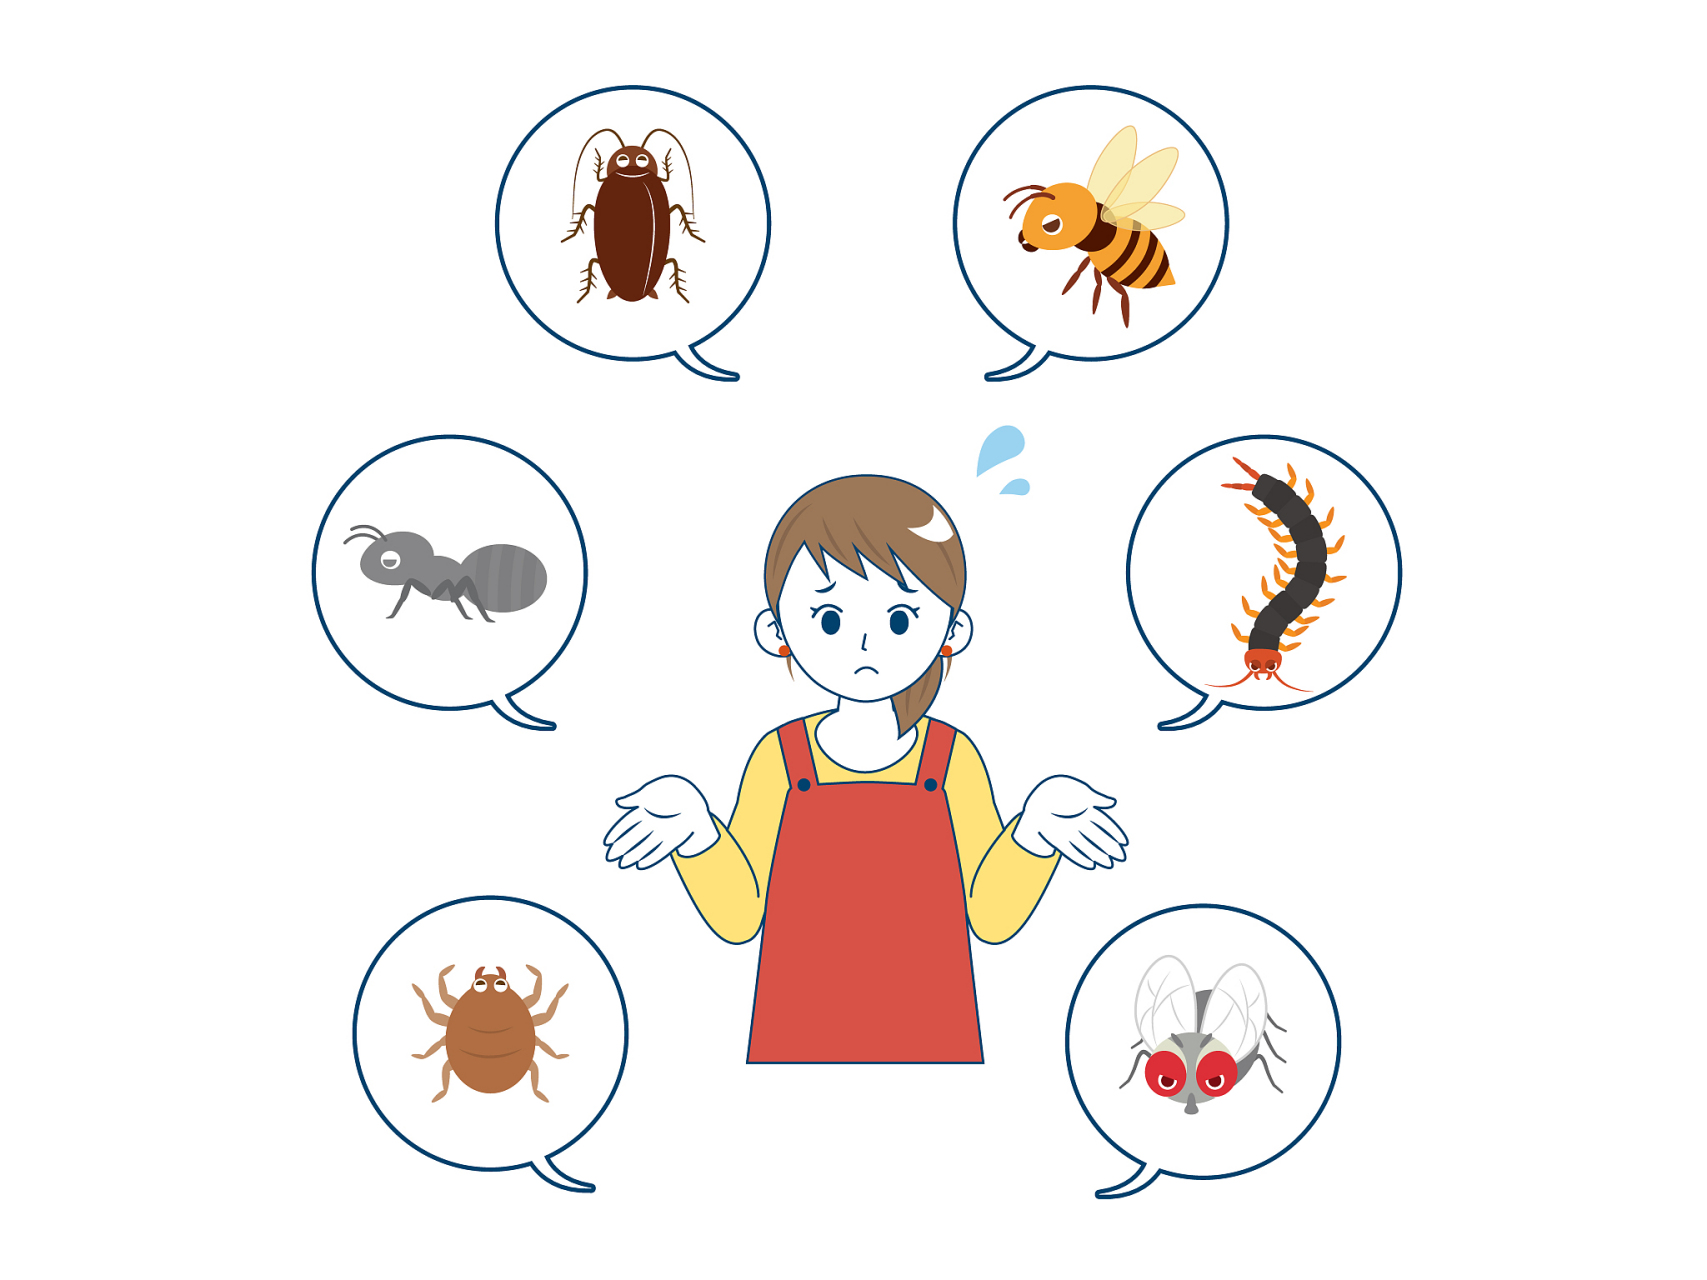 蜱虫,跳蚤等媒介传播的疾病,这些昆虫或节肢动物在吸取动物或人的血液